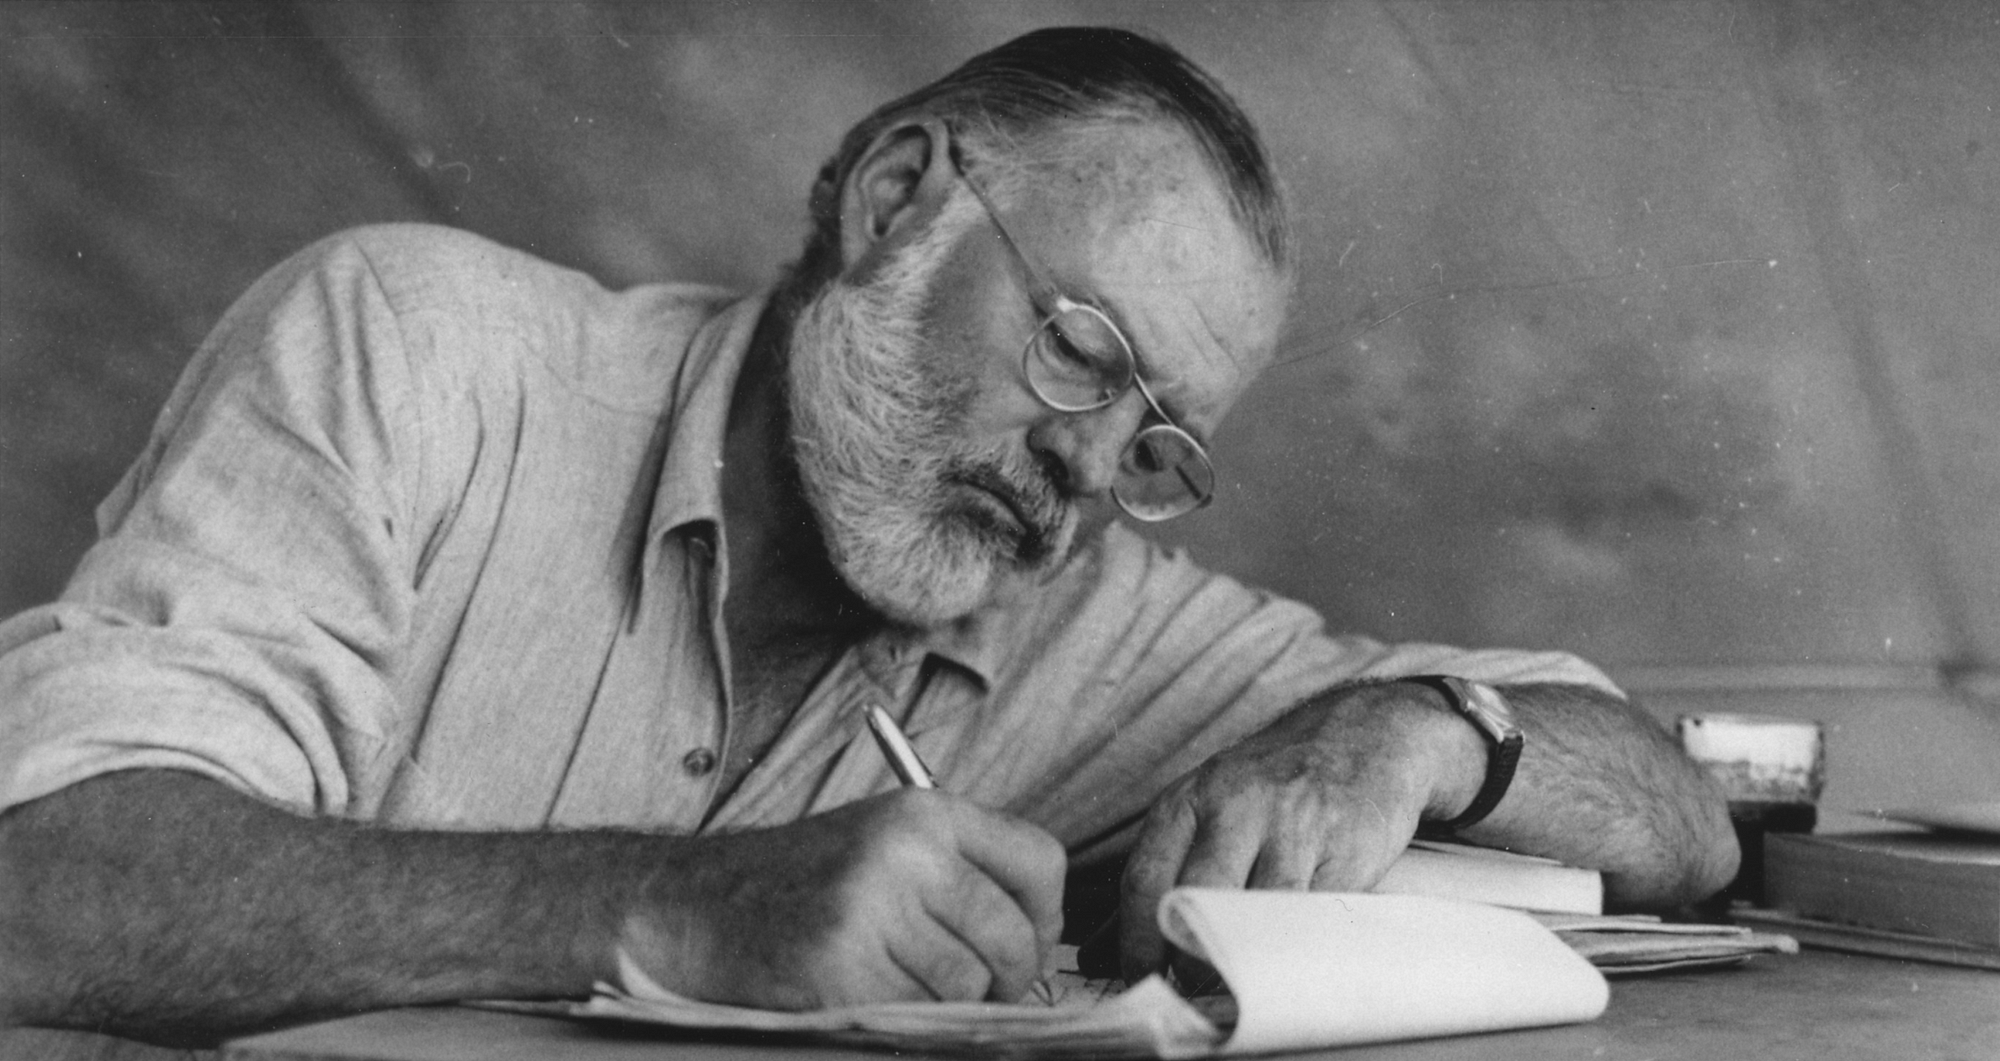 RÃ©sultat de recherche d'images pour "Hemingway"